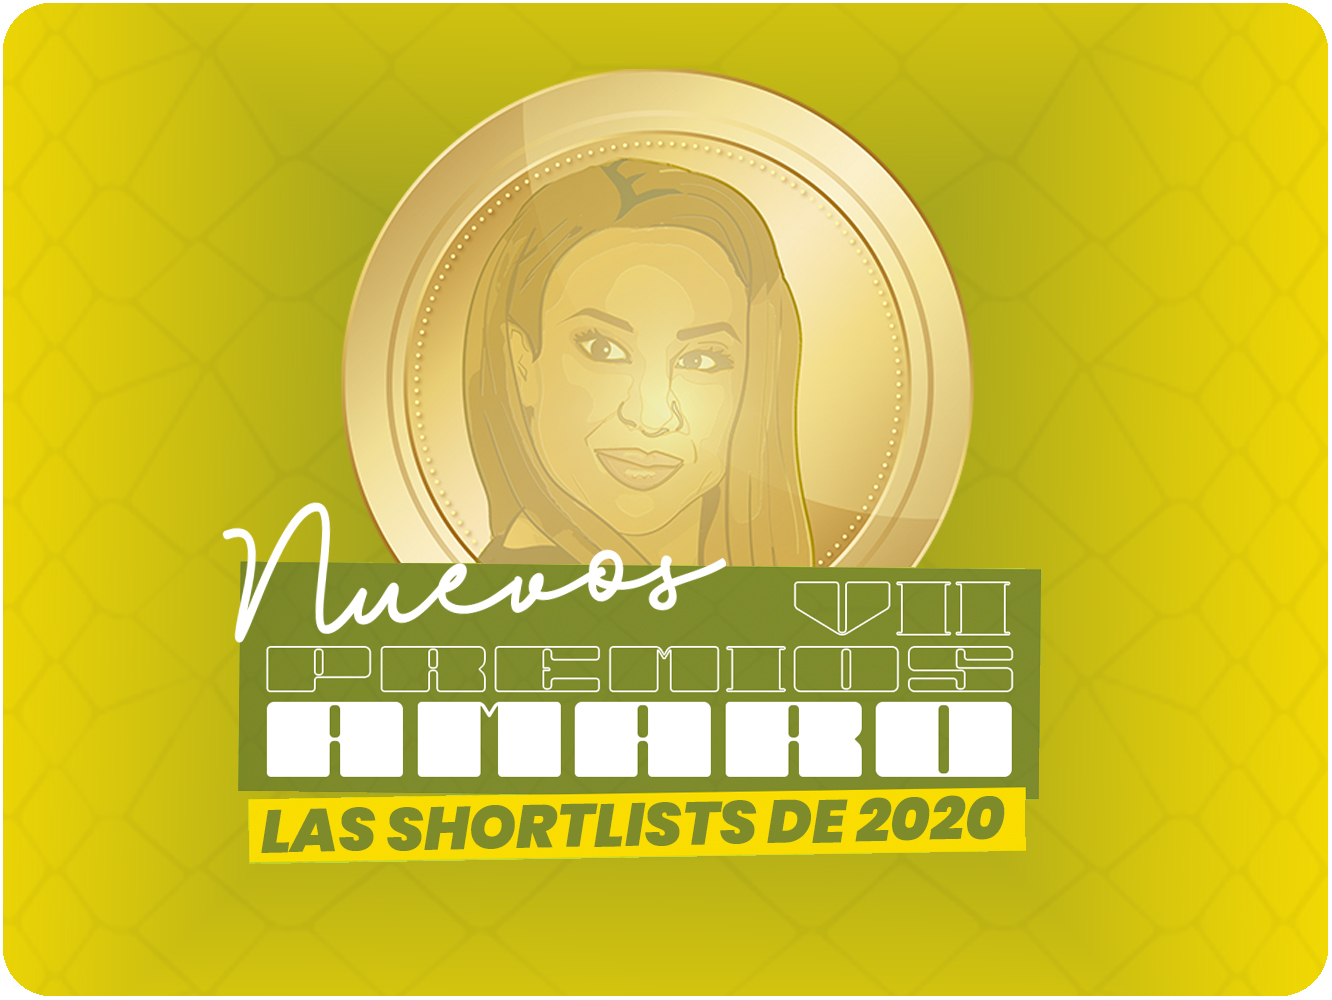 VII Premios Amaro | Las shortlists de 2020, ¡ya puedes votar!